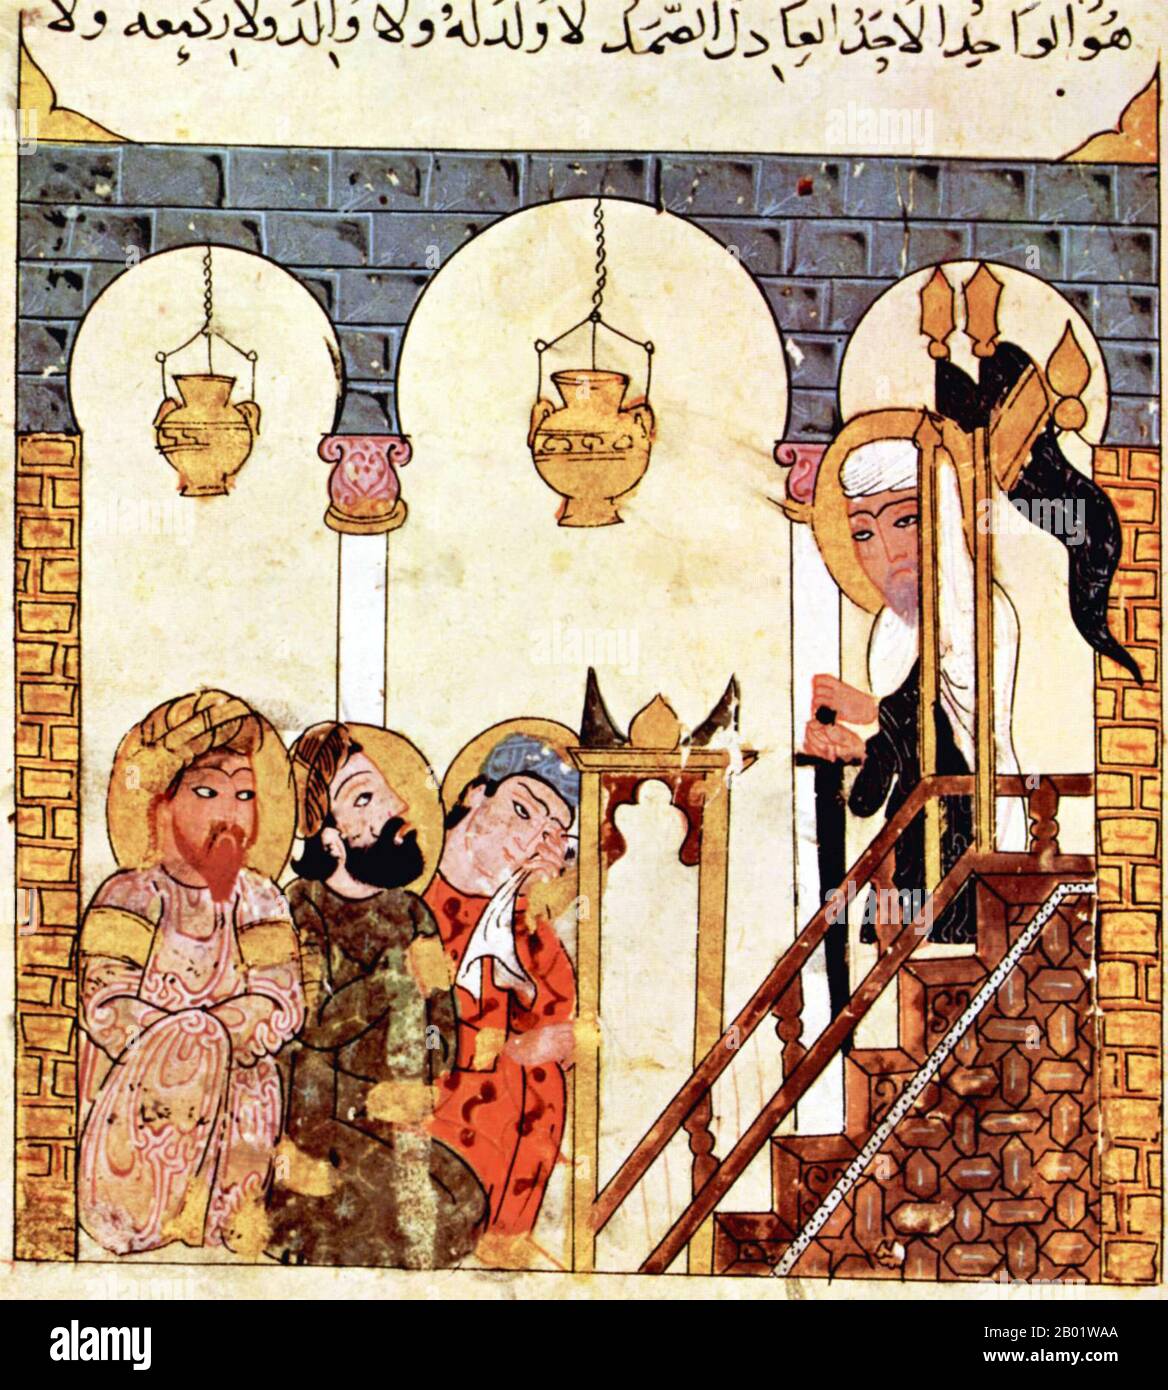 Iraq/Uzbekistan: Abu-Zayd predicava nella Moschea di Samarcanda. Pittura in miniatura dal 'Maqam' o 'Assemblea' di al-Hariri di Bassora, c. 1225-1235. Le Maqāma (letteralmente "assemblee") sono un genere letterario arabo (originariamente) di prosa rima con intervalli di poesia in cui la stravaganza retorica è evidente. Si dice che l'autore del X secolo Badī al-Zaman al-Hamadhāni abbia inventato la forma, che fu estesa da al-Hariri di Bassora nel secolo successivo. Entrambi gli autori maqāmāt si concentrano sulle figure erranti del trickster nel parlare alle assemblee dei potenti, trasmesse da un narratore. Foto Stock